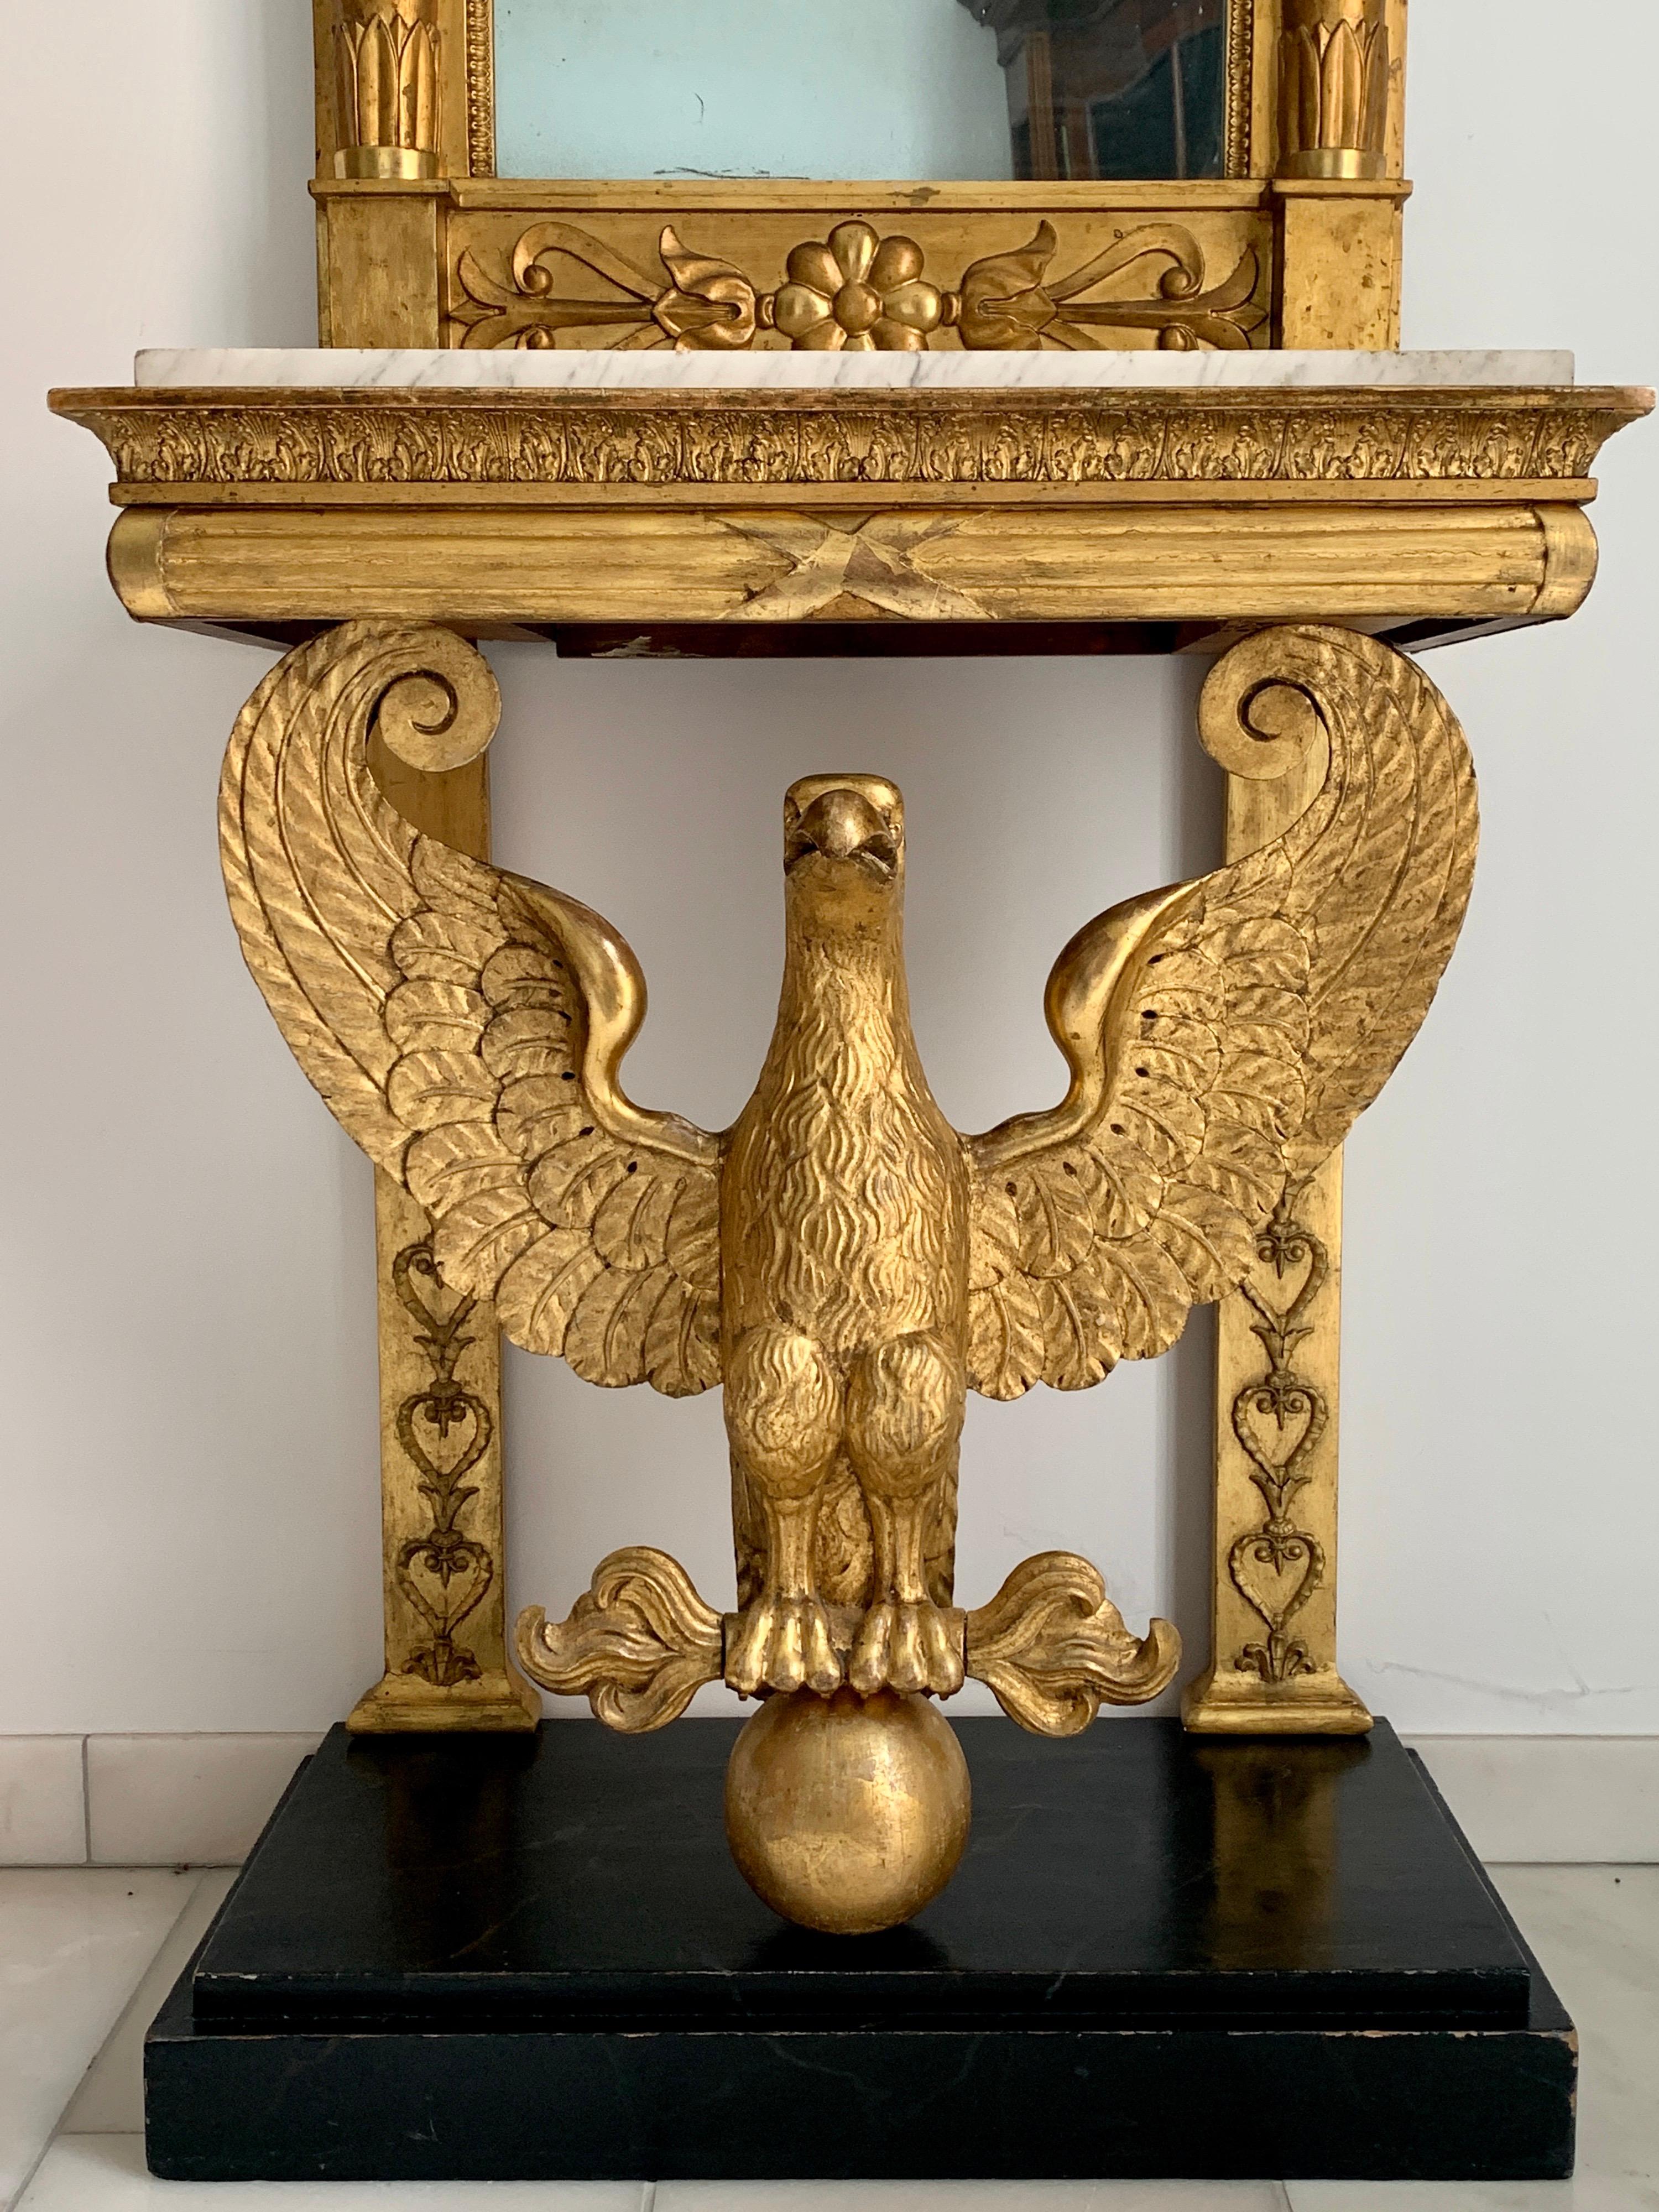 Très belle console en bois doré du début du XIXe siècle, avec un aigle entièrement sculpté soutenant le plateau en marbre blanc. Miroir assorti avec décoration de la fin de l'Empire. État authentique, marbre d'origine, plaque de miroir en deux